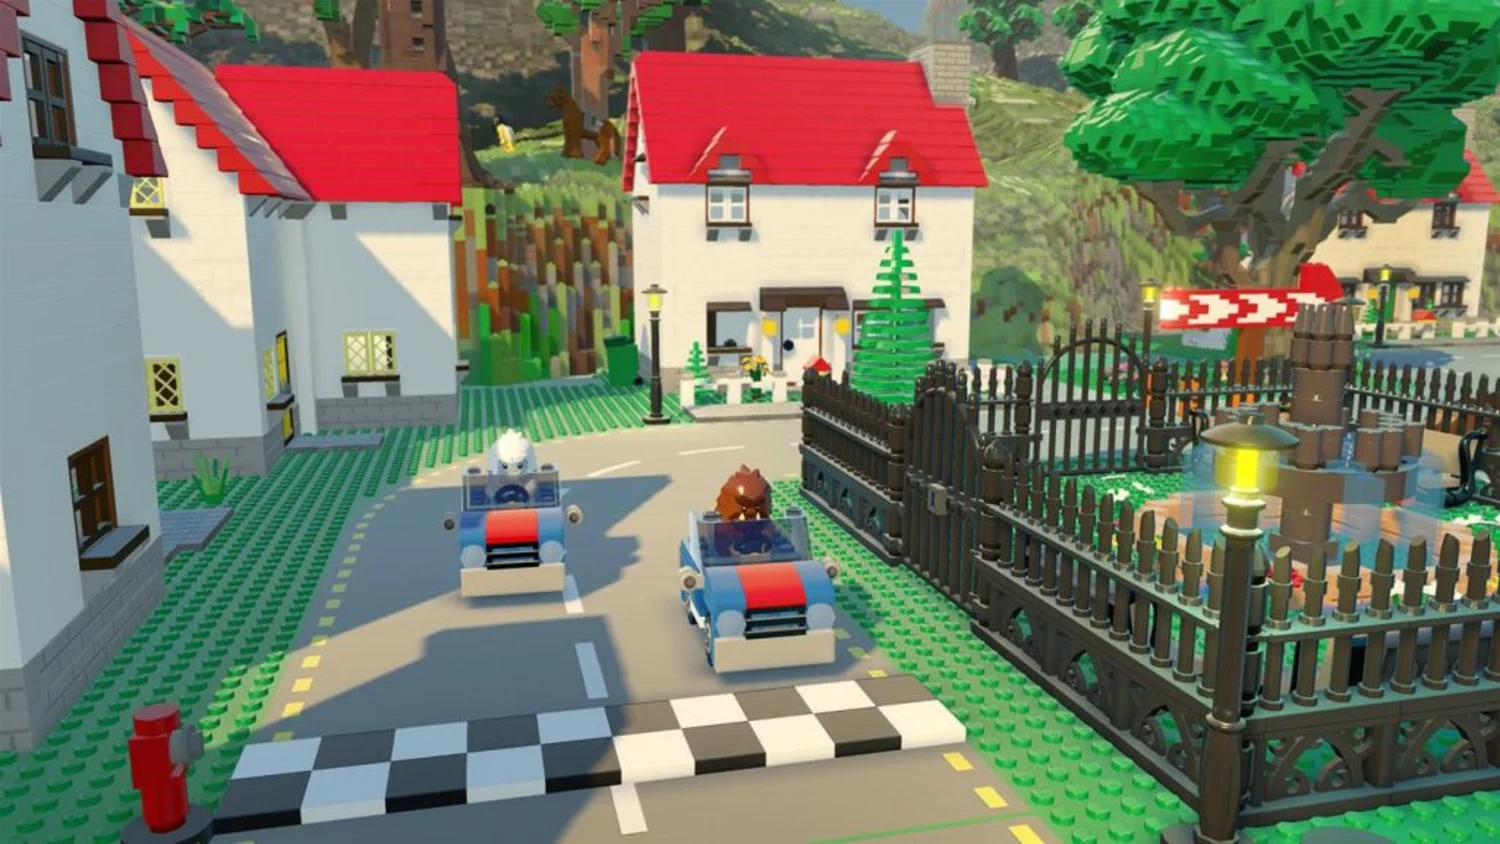 Jogo Lego Worlds PS4